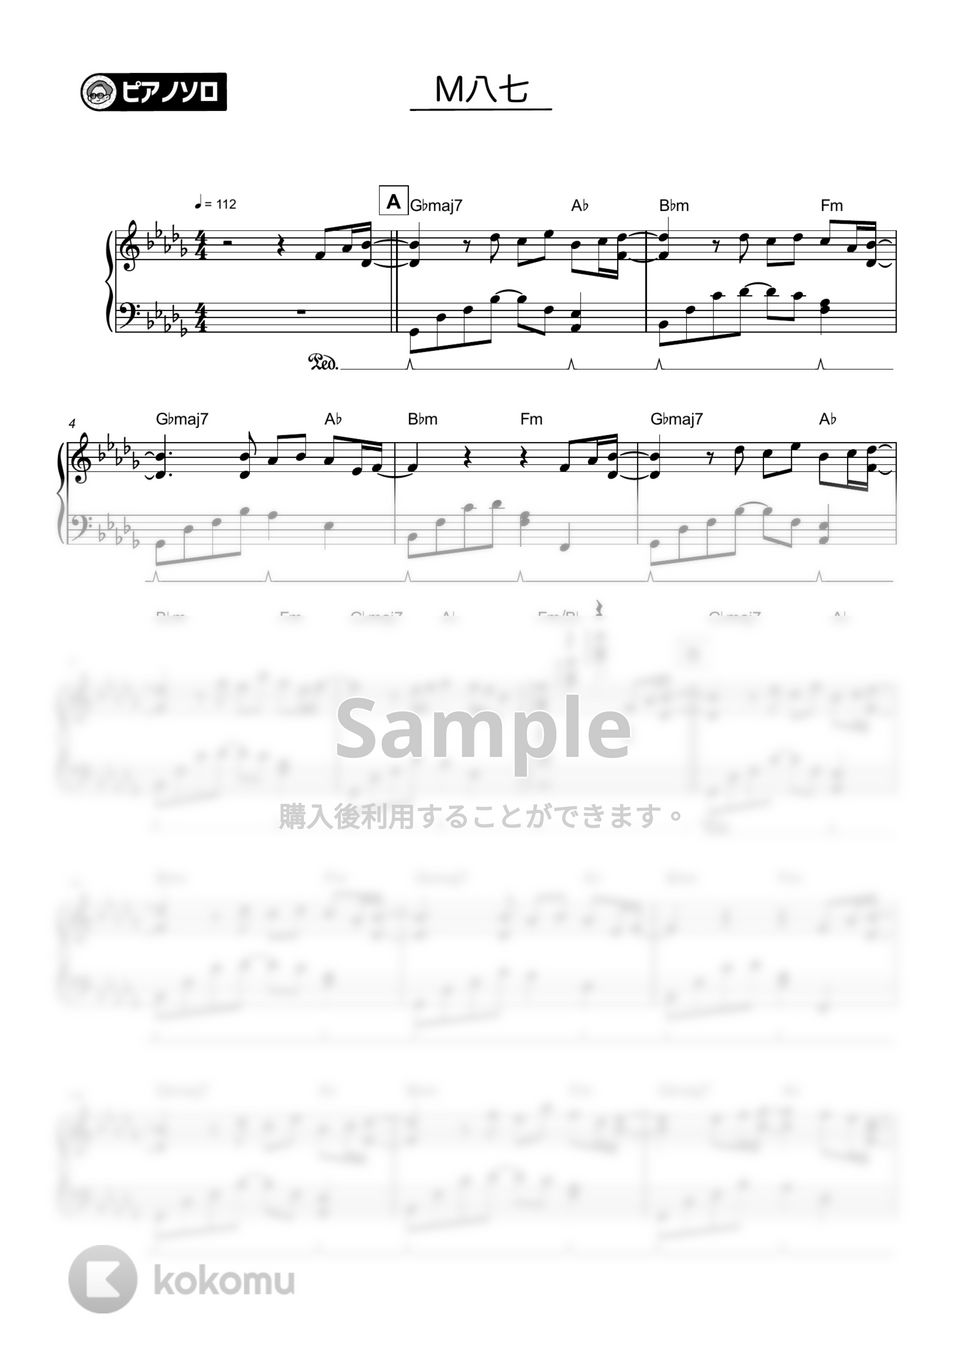 米津玄師 - M八七 by シータピアノ